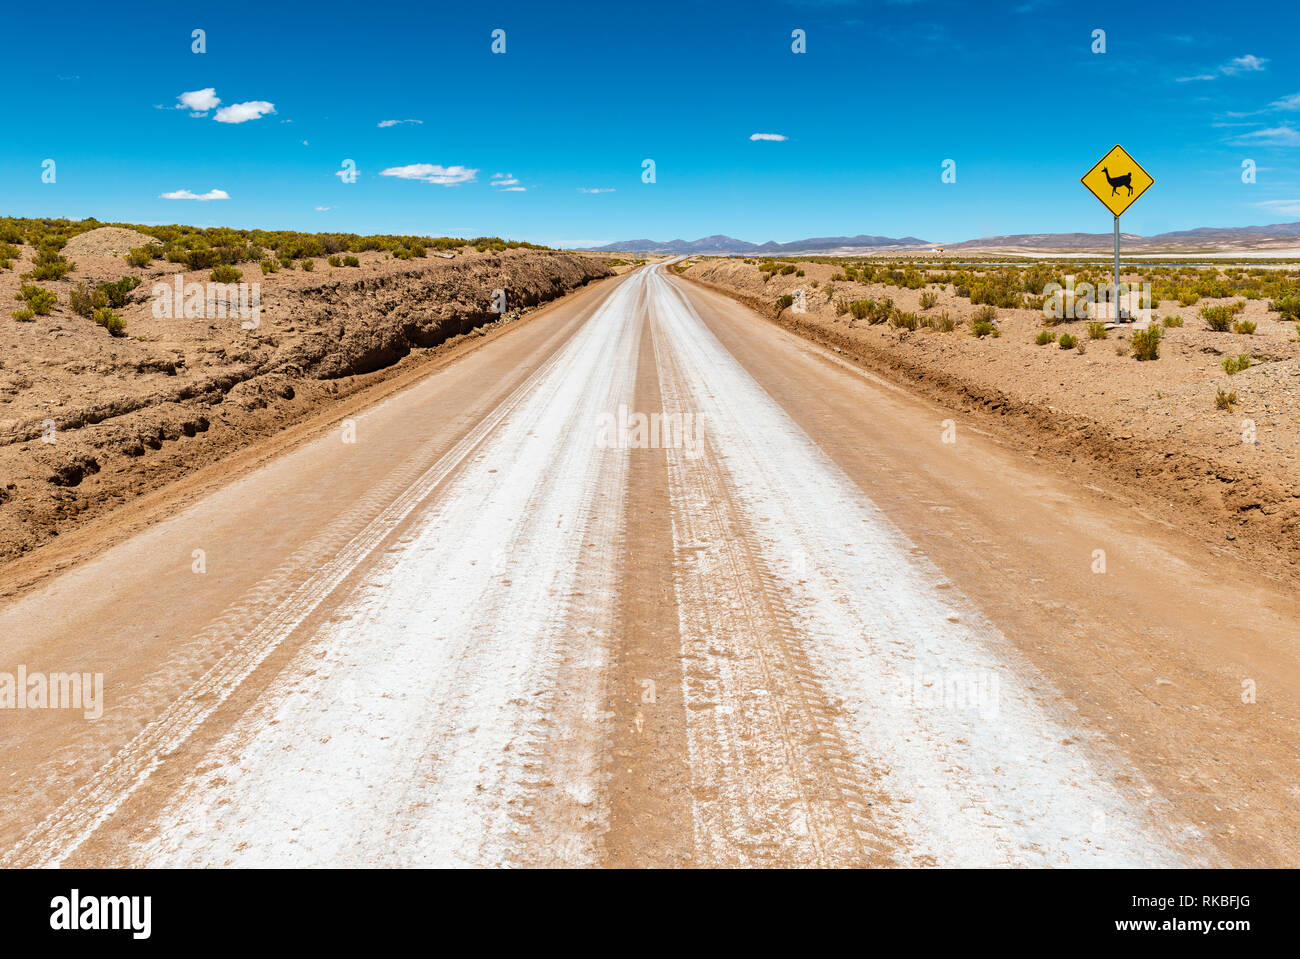 Fotografía de paisaje de una autopista, carretera en el Salar de Uyuni El Salar de Uyuni (región) con una señal de peligro: llama en la carretera! Bolivia, América del Sur. Foto de stock